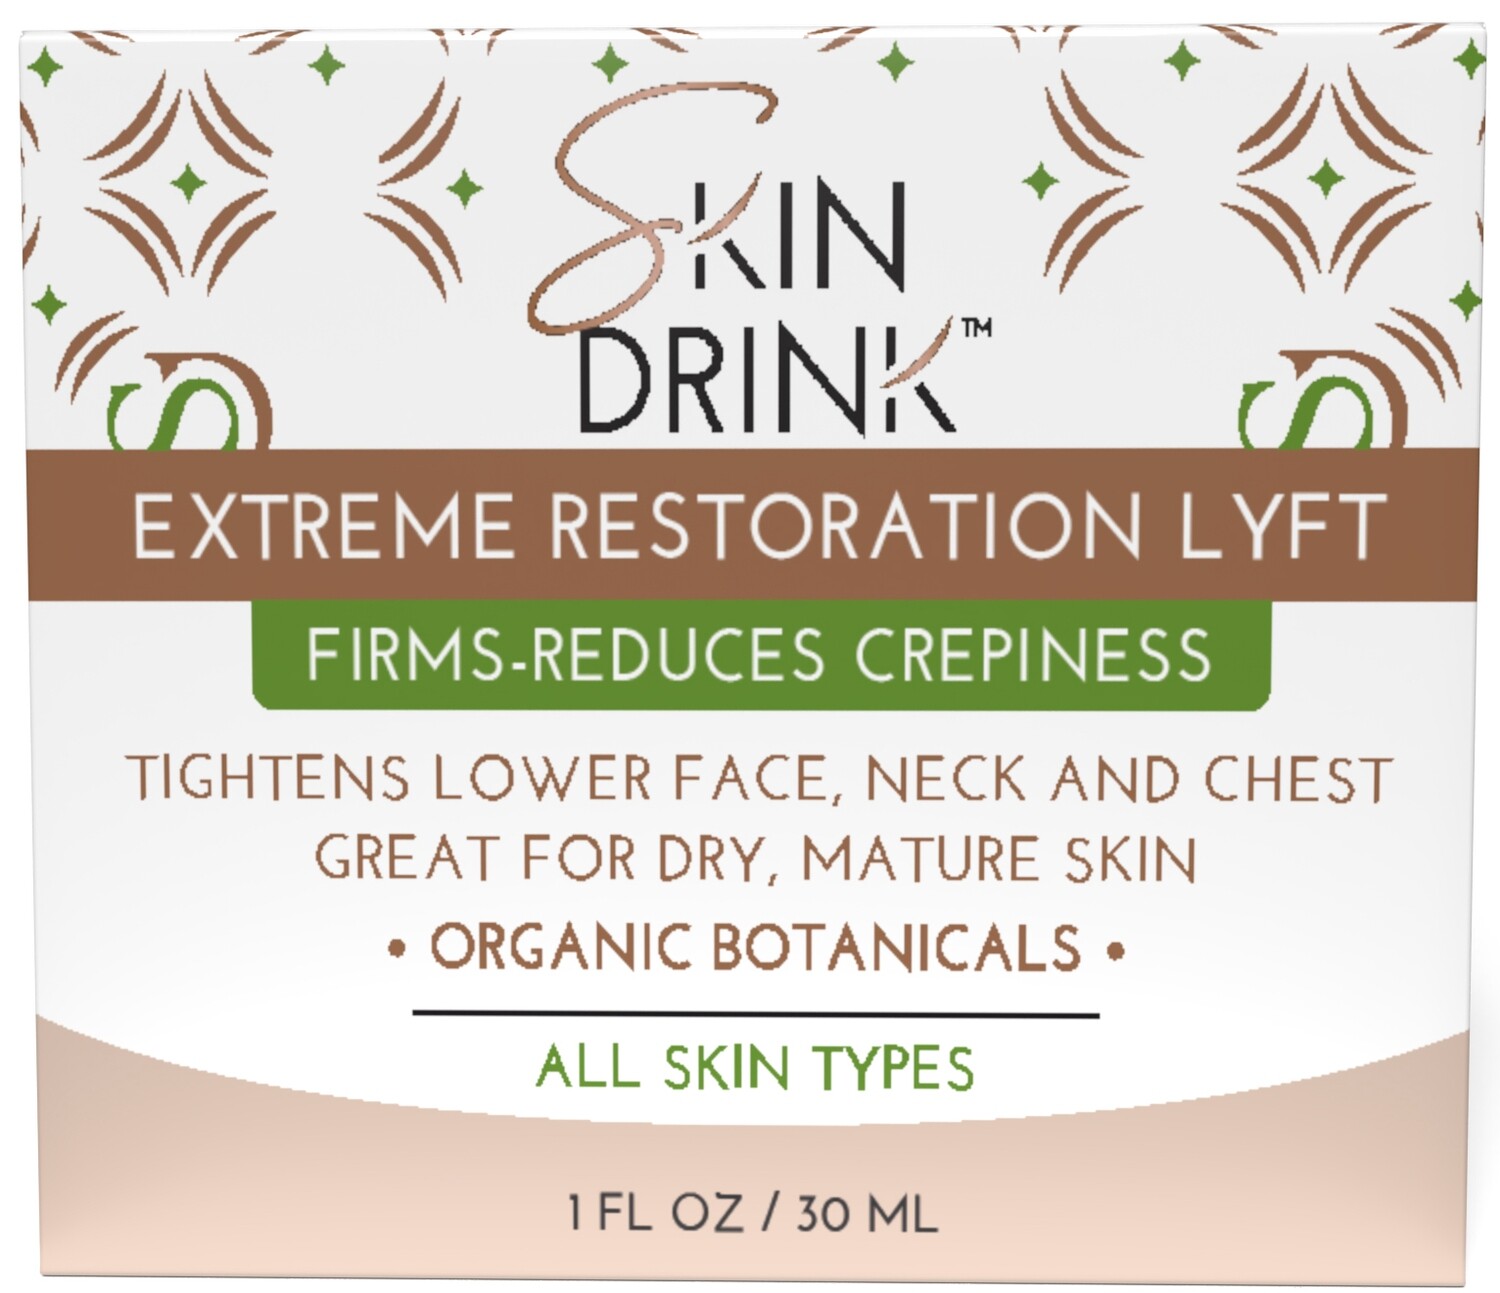 Skin Drink Extreme Restoration Lyft